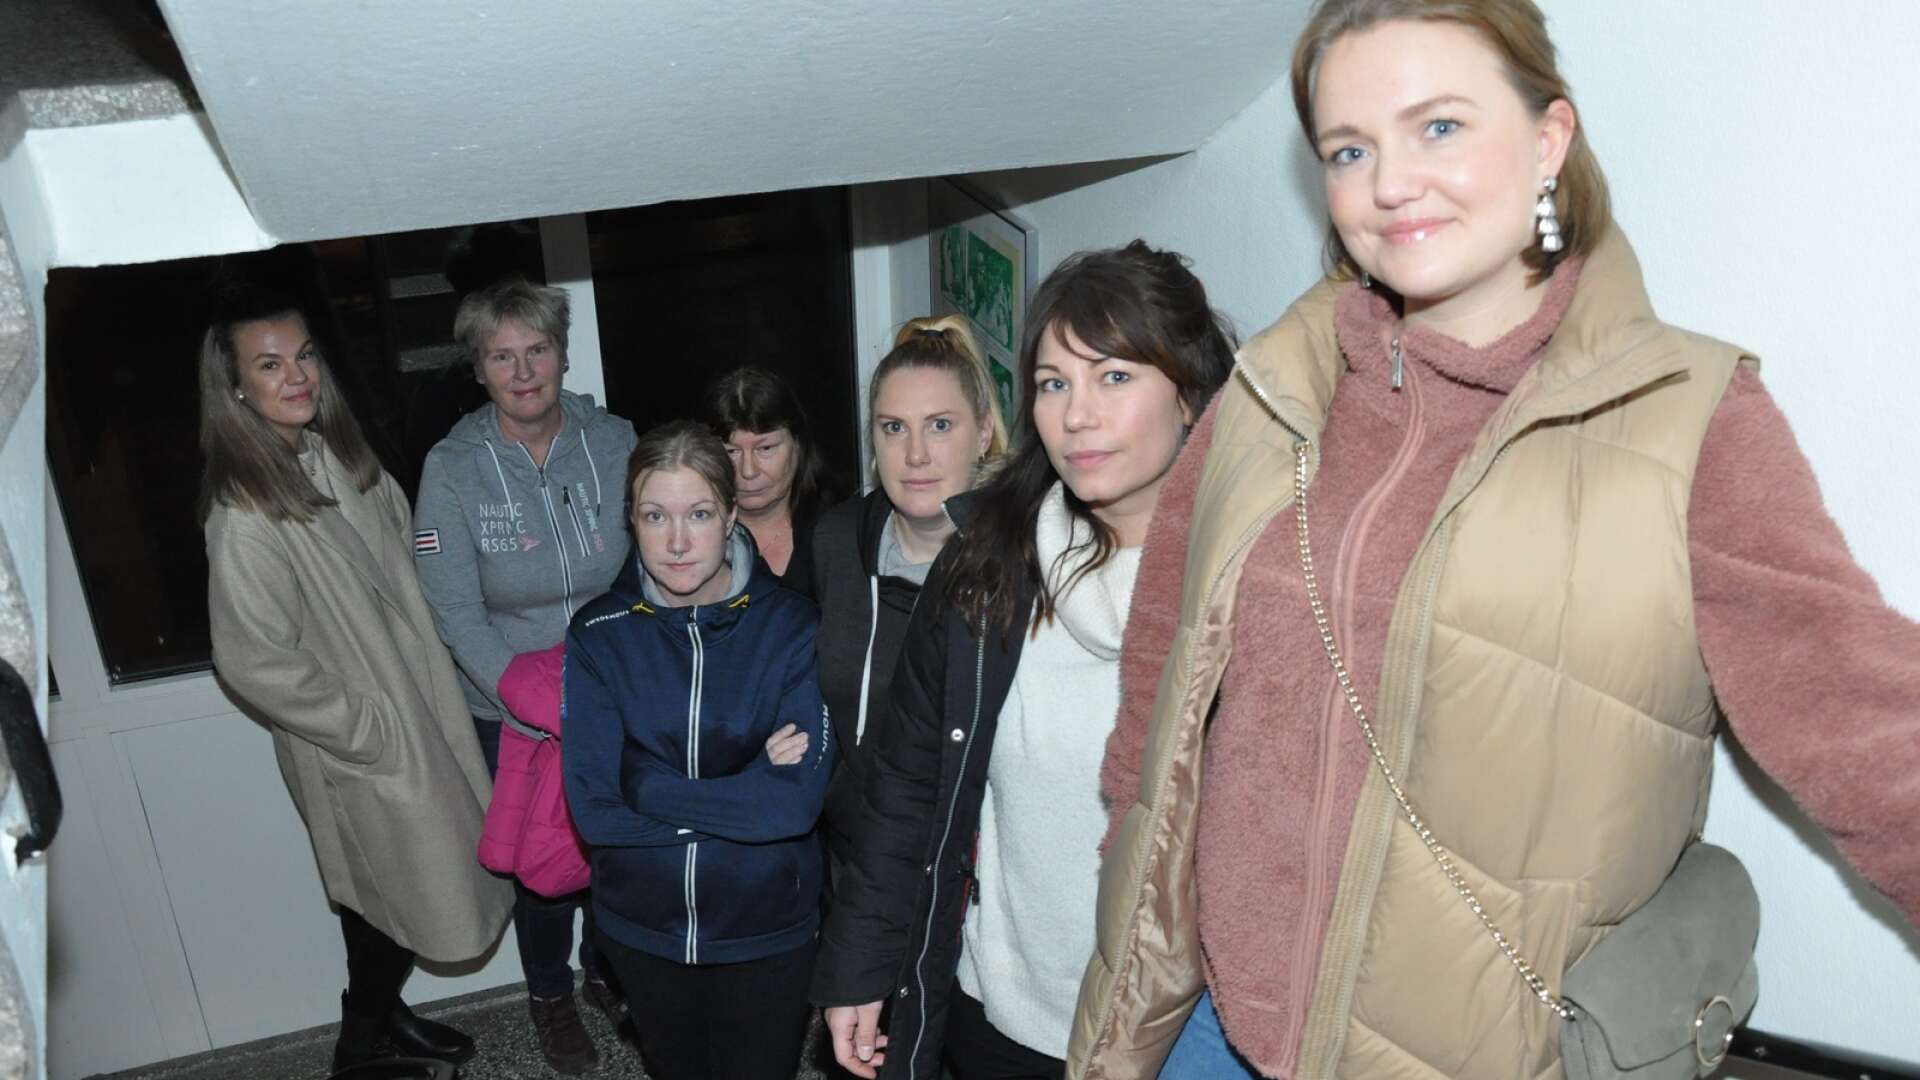 Hemtjänstpersonal i Bengtsfors kommun protesterar mot dåliga arbetsvillkor. På bilden syns Linda Eriksson, Madeleine Olsson, Camilla Gustafsson, Sirkka Johansson, Emma Löf,  Anna Charlotte Dollbring och Rebecka Kall.